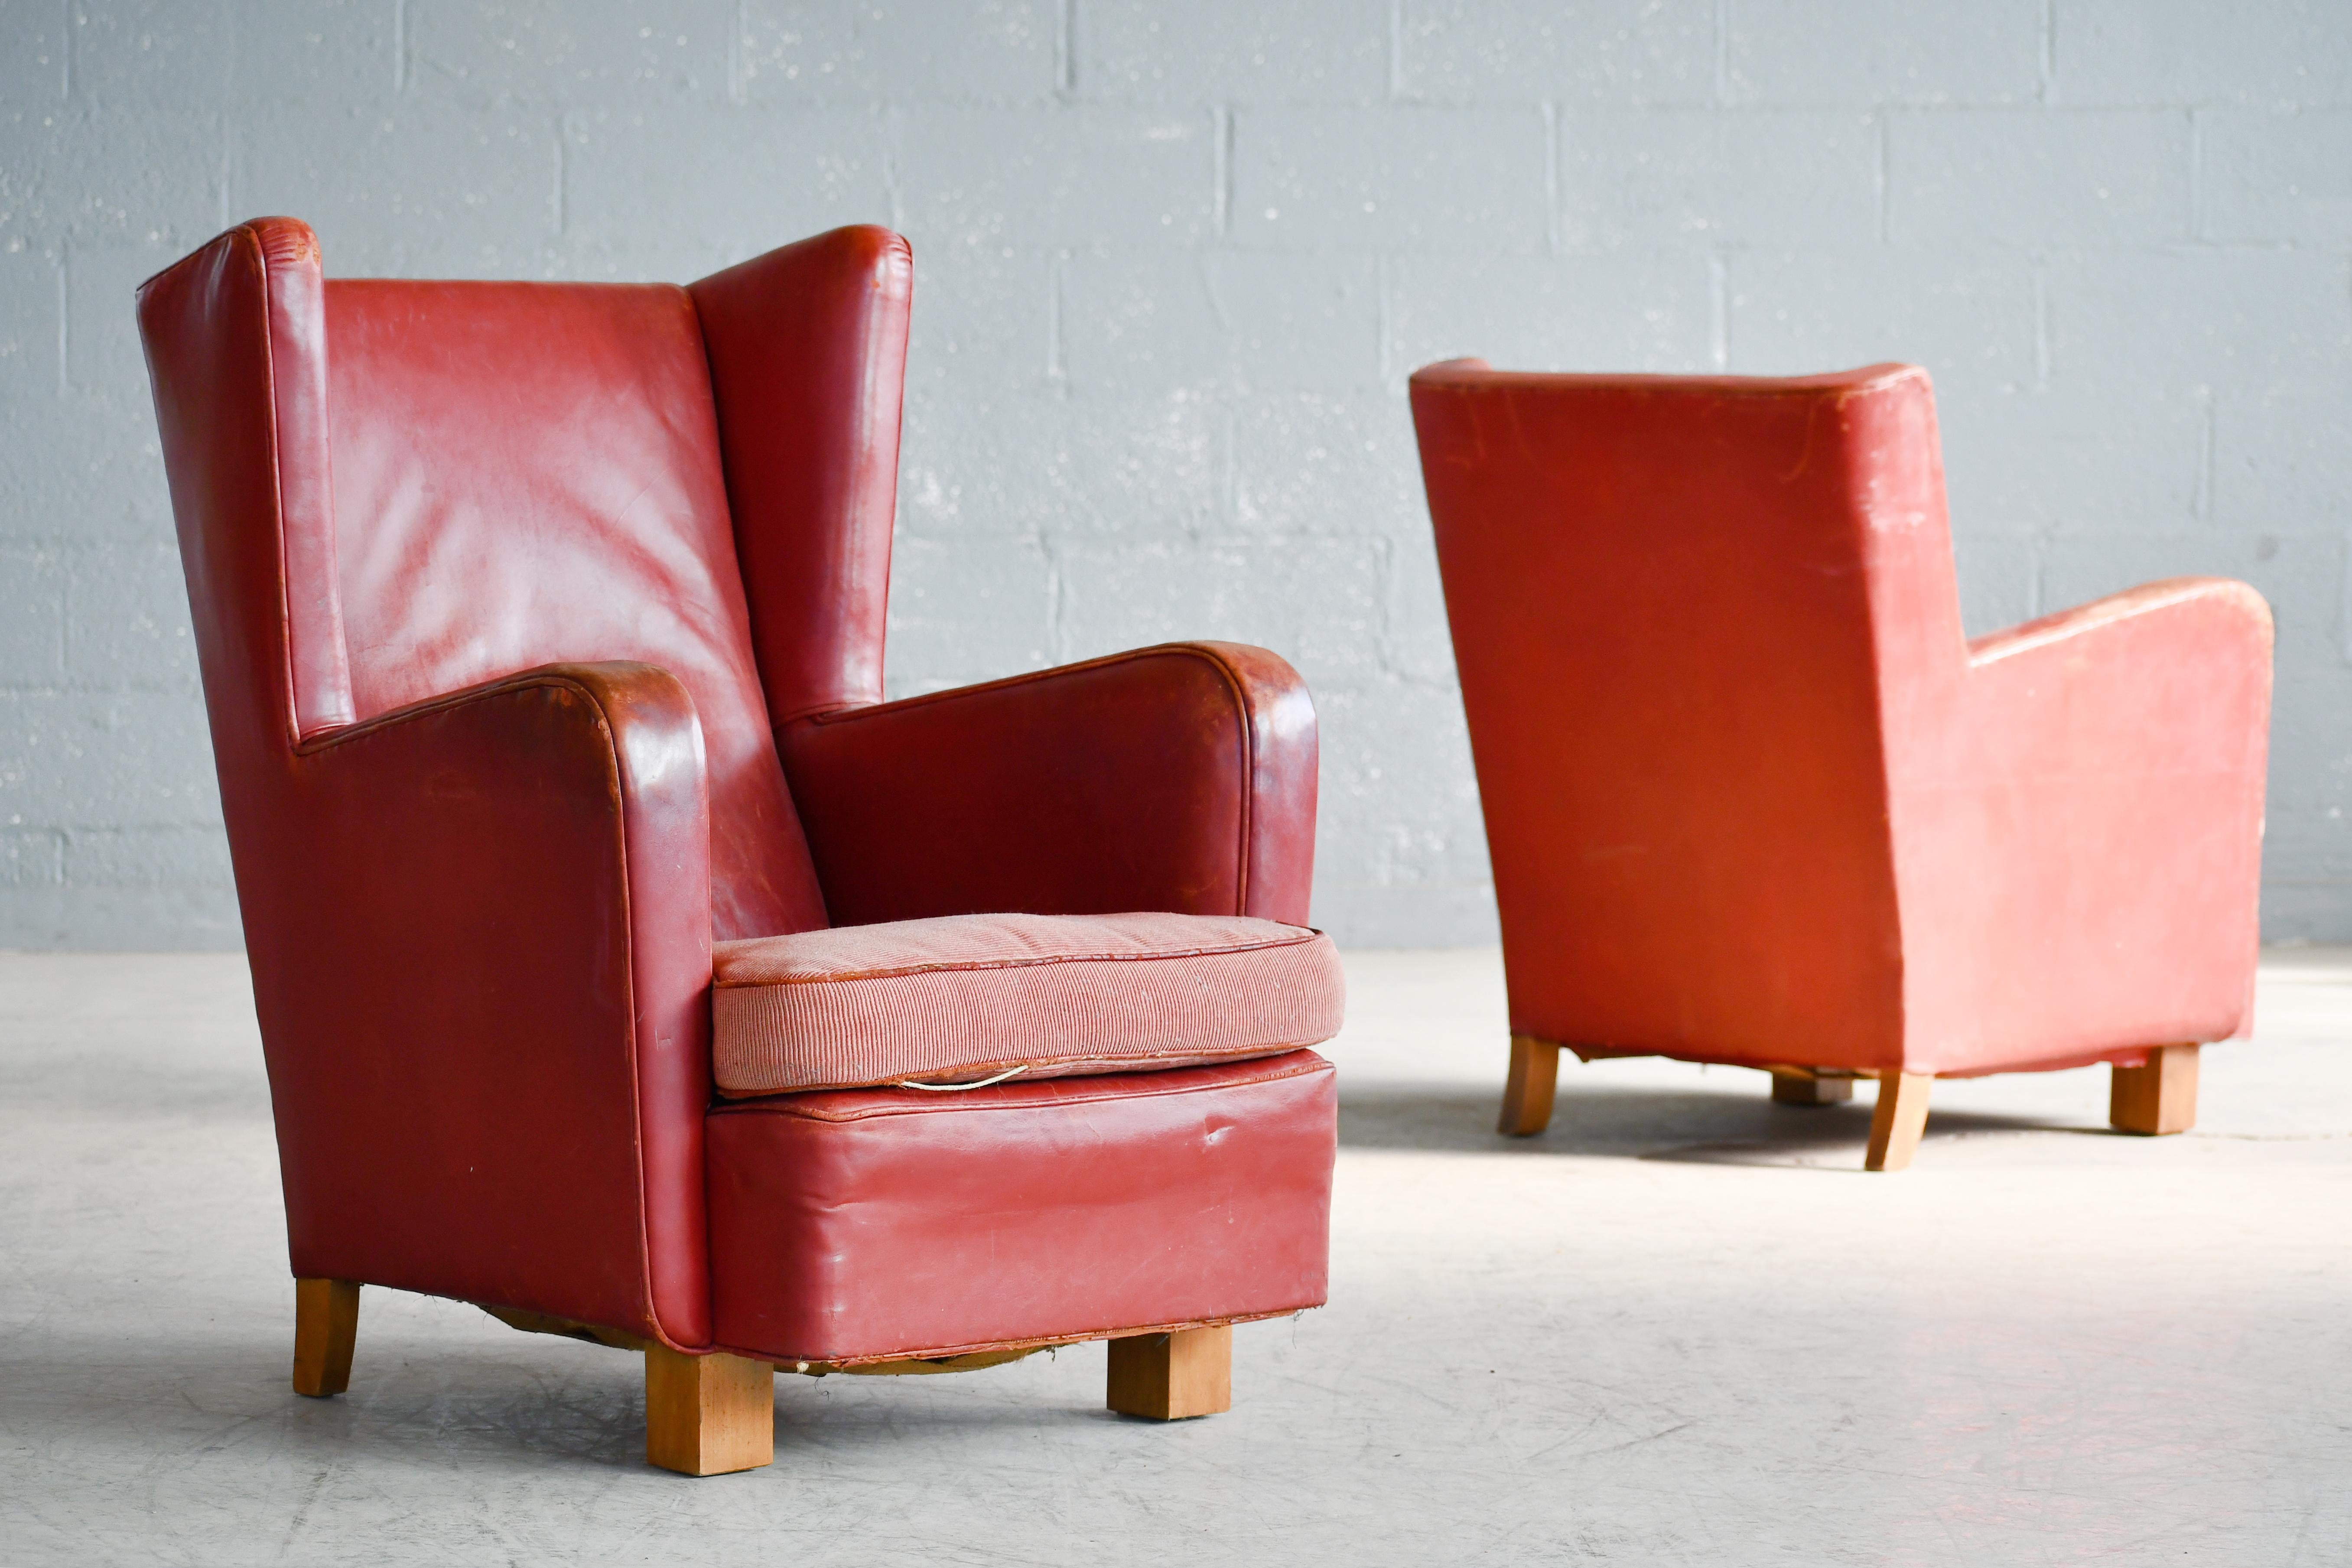 Cuir Chaise longue géométrique danoise moderne des années 1930 en cuir rougeâtre V